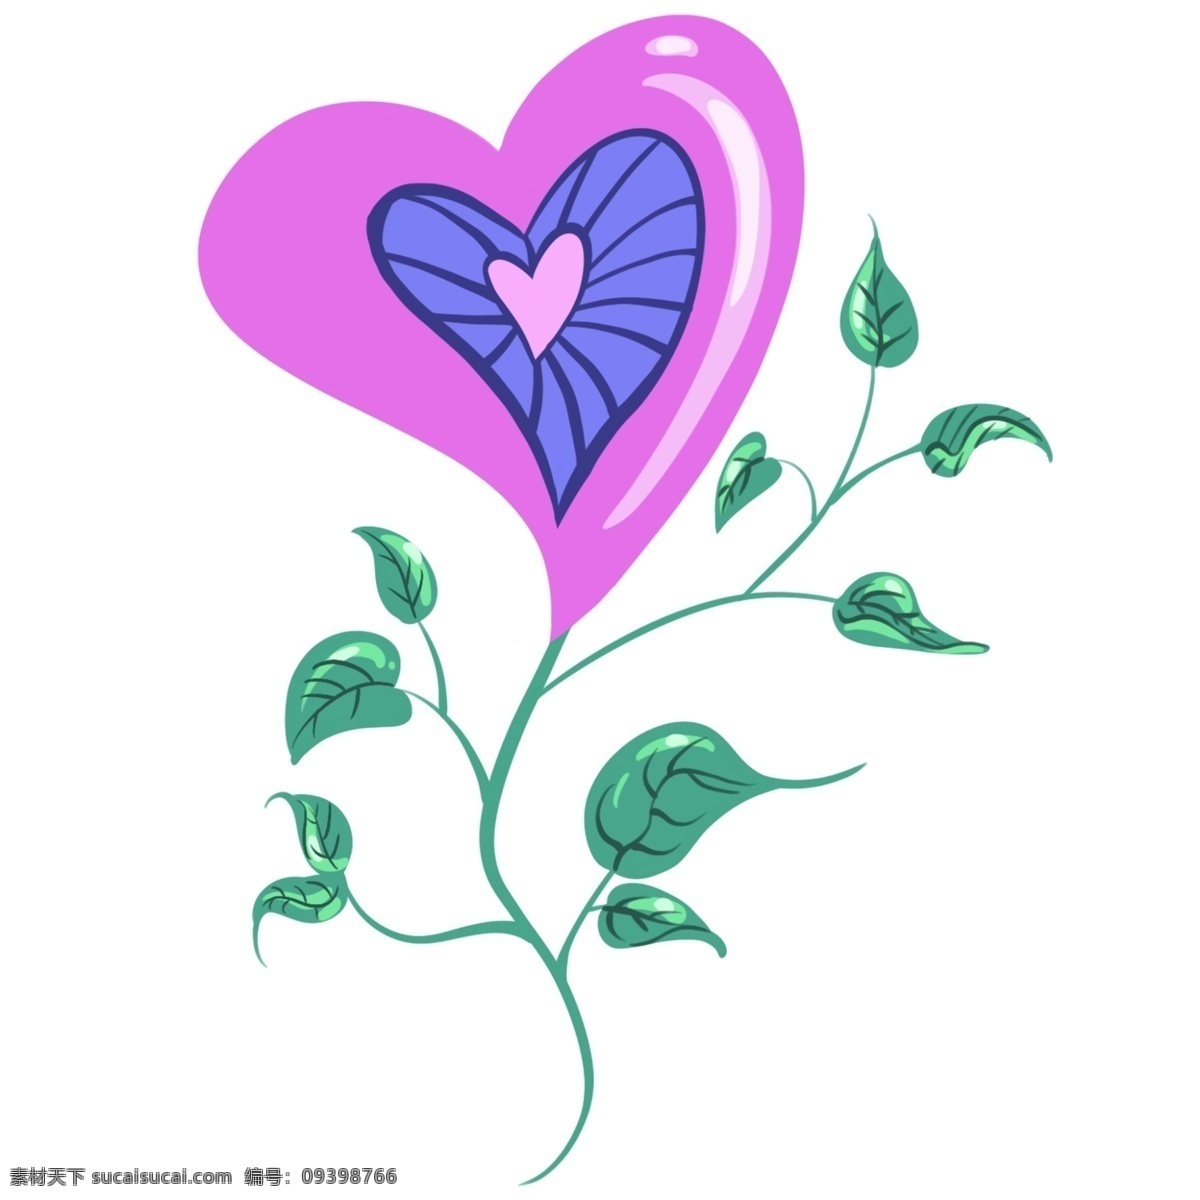 创意 星星 小树 插画 心形的小树 卡通插画 心形插画 心形产品 心形物品 心形小物 绿色的叶子